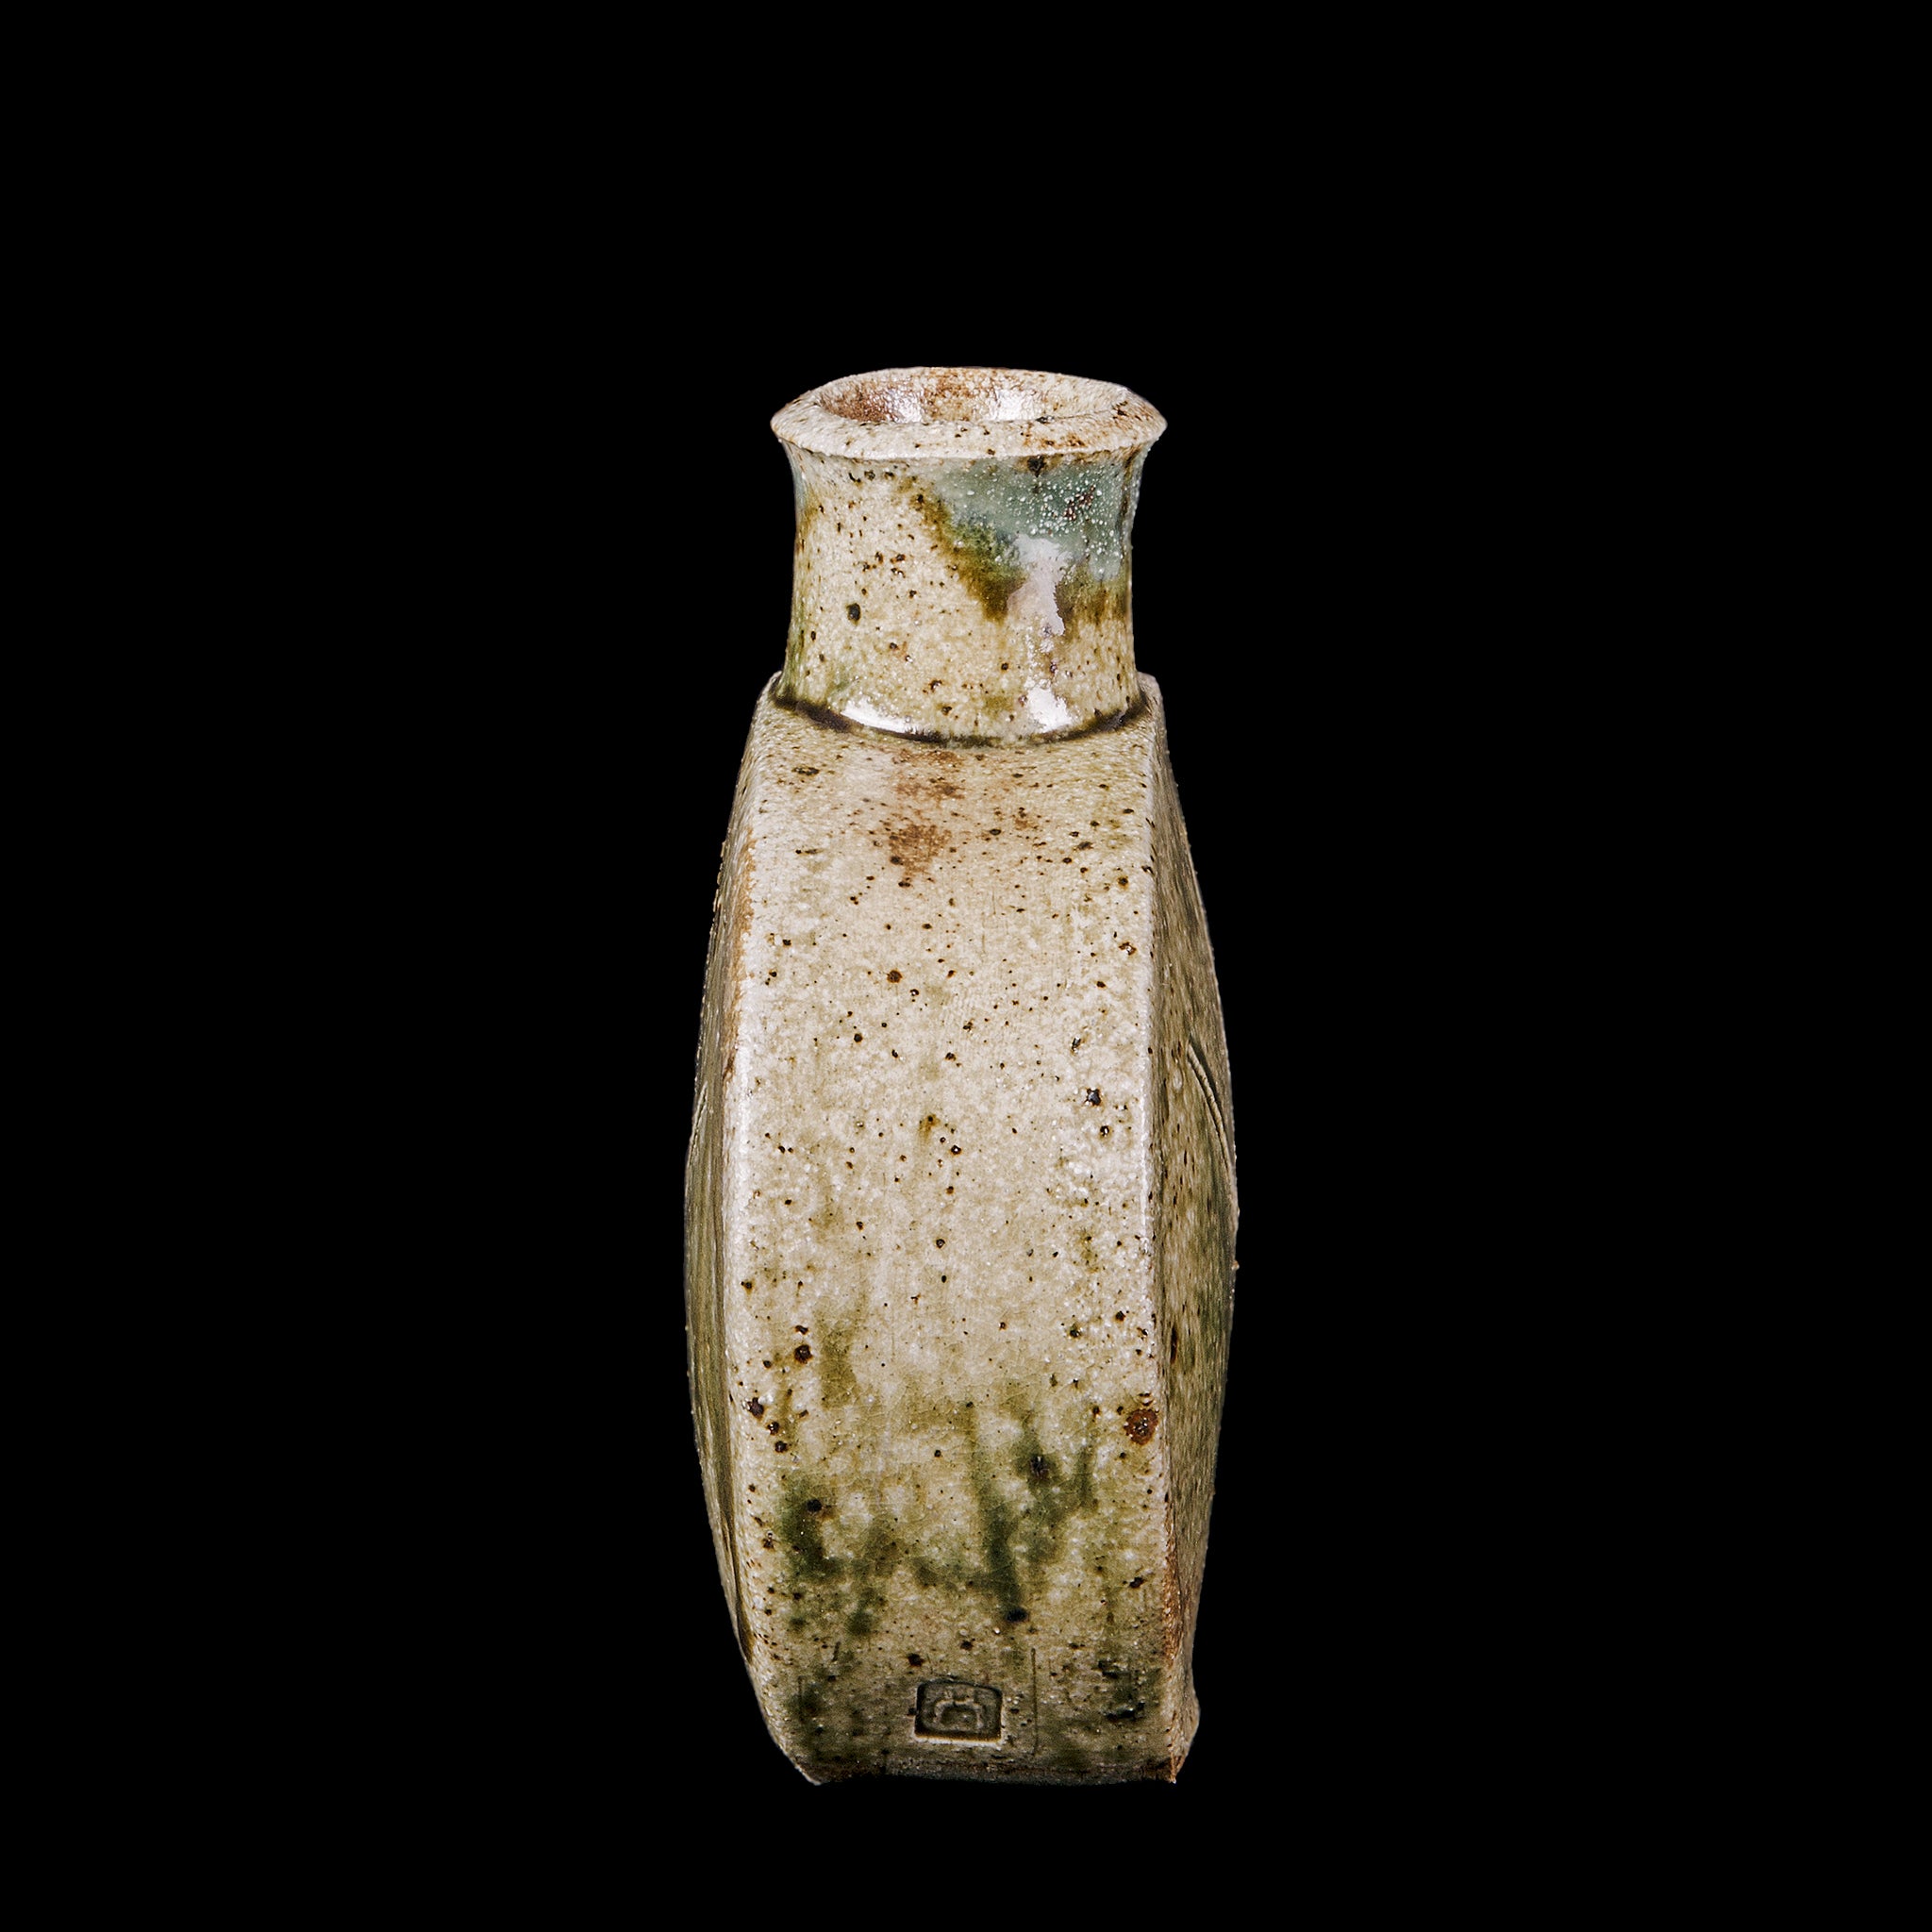 Vase No.126/22